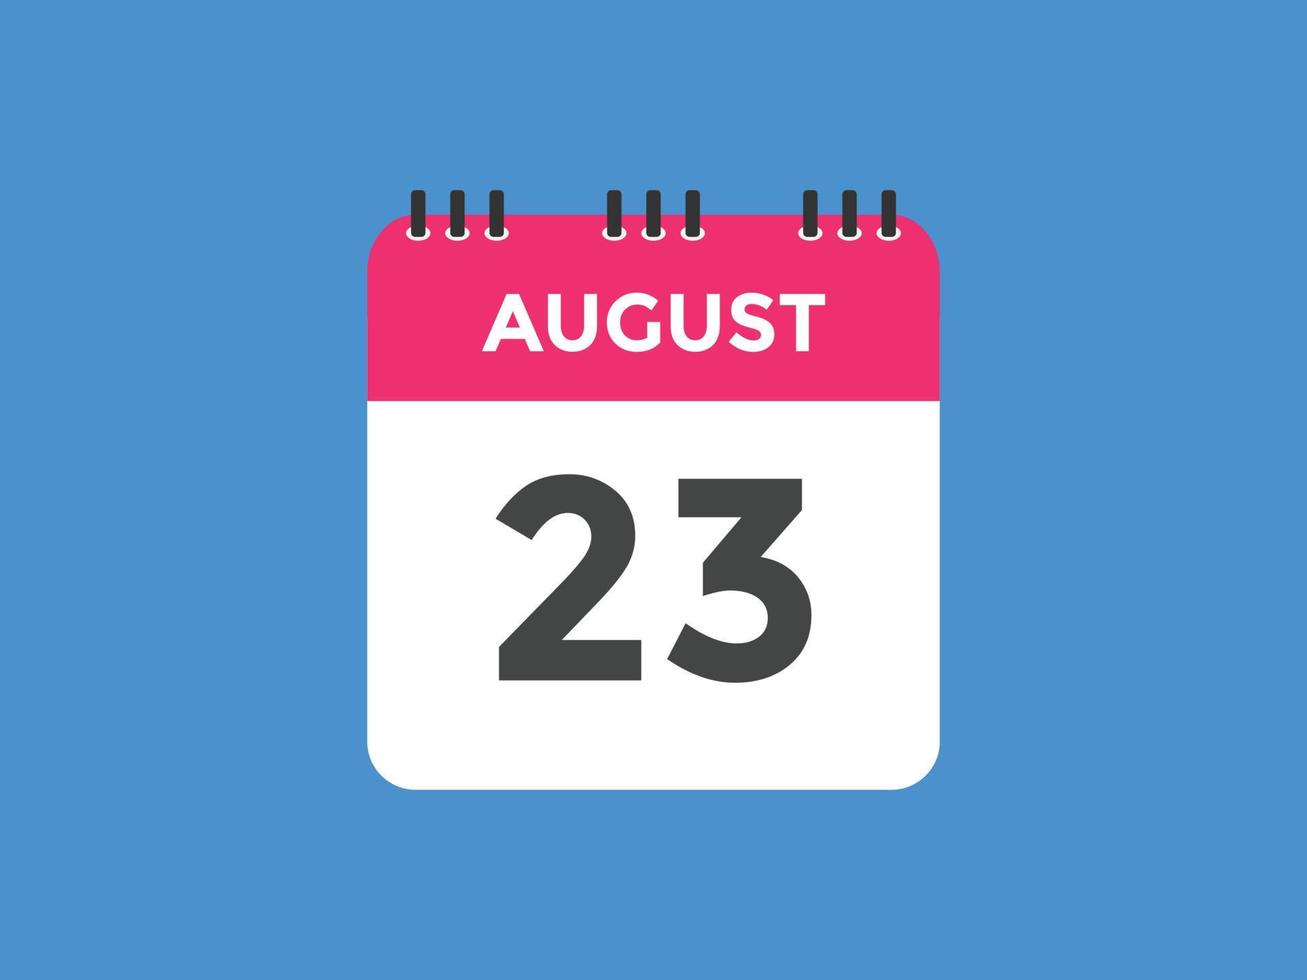 rappel du calendrier du 23 août. Modèle d'icône de calendrier quotidien du 23 août. modèle de conception d'icône calendrier 23 août. illustration vectorielle vecteur